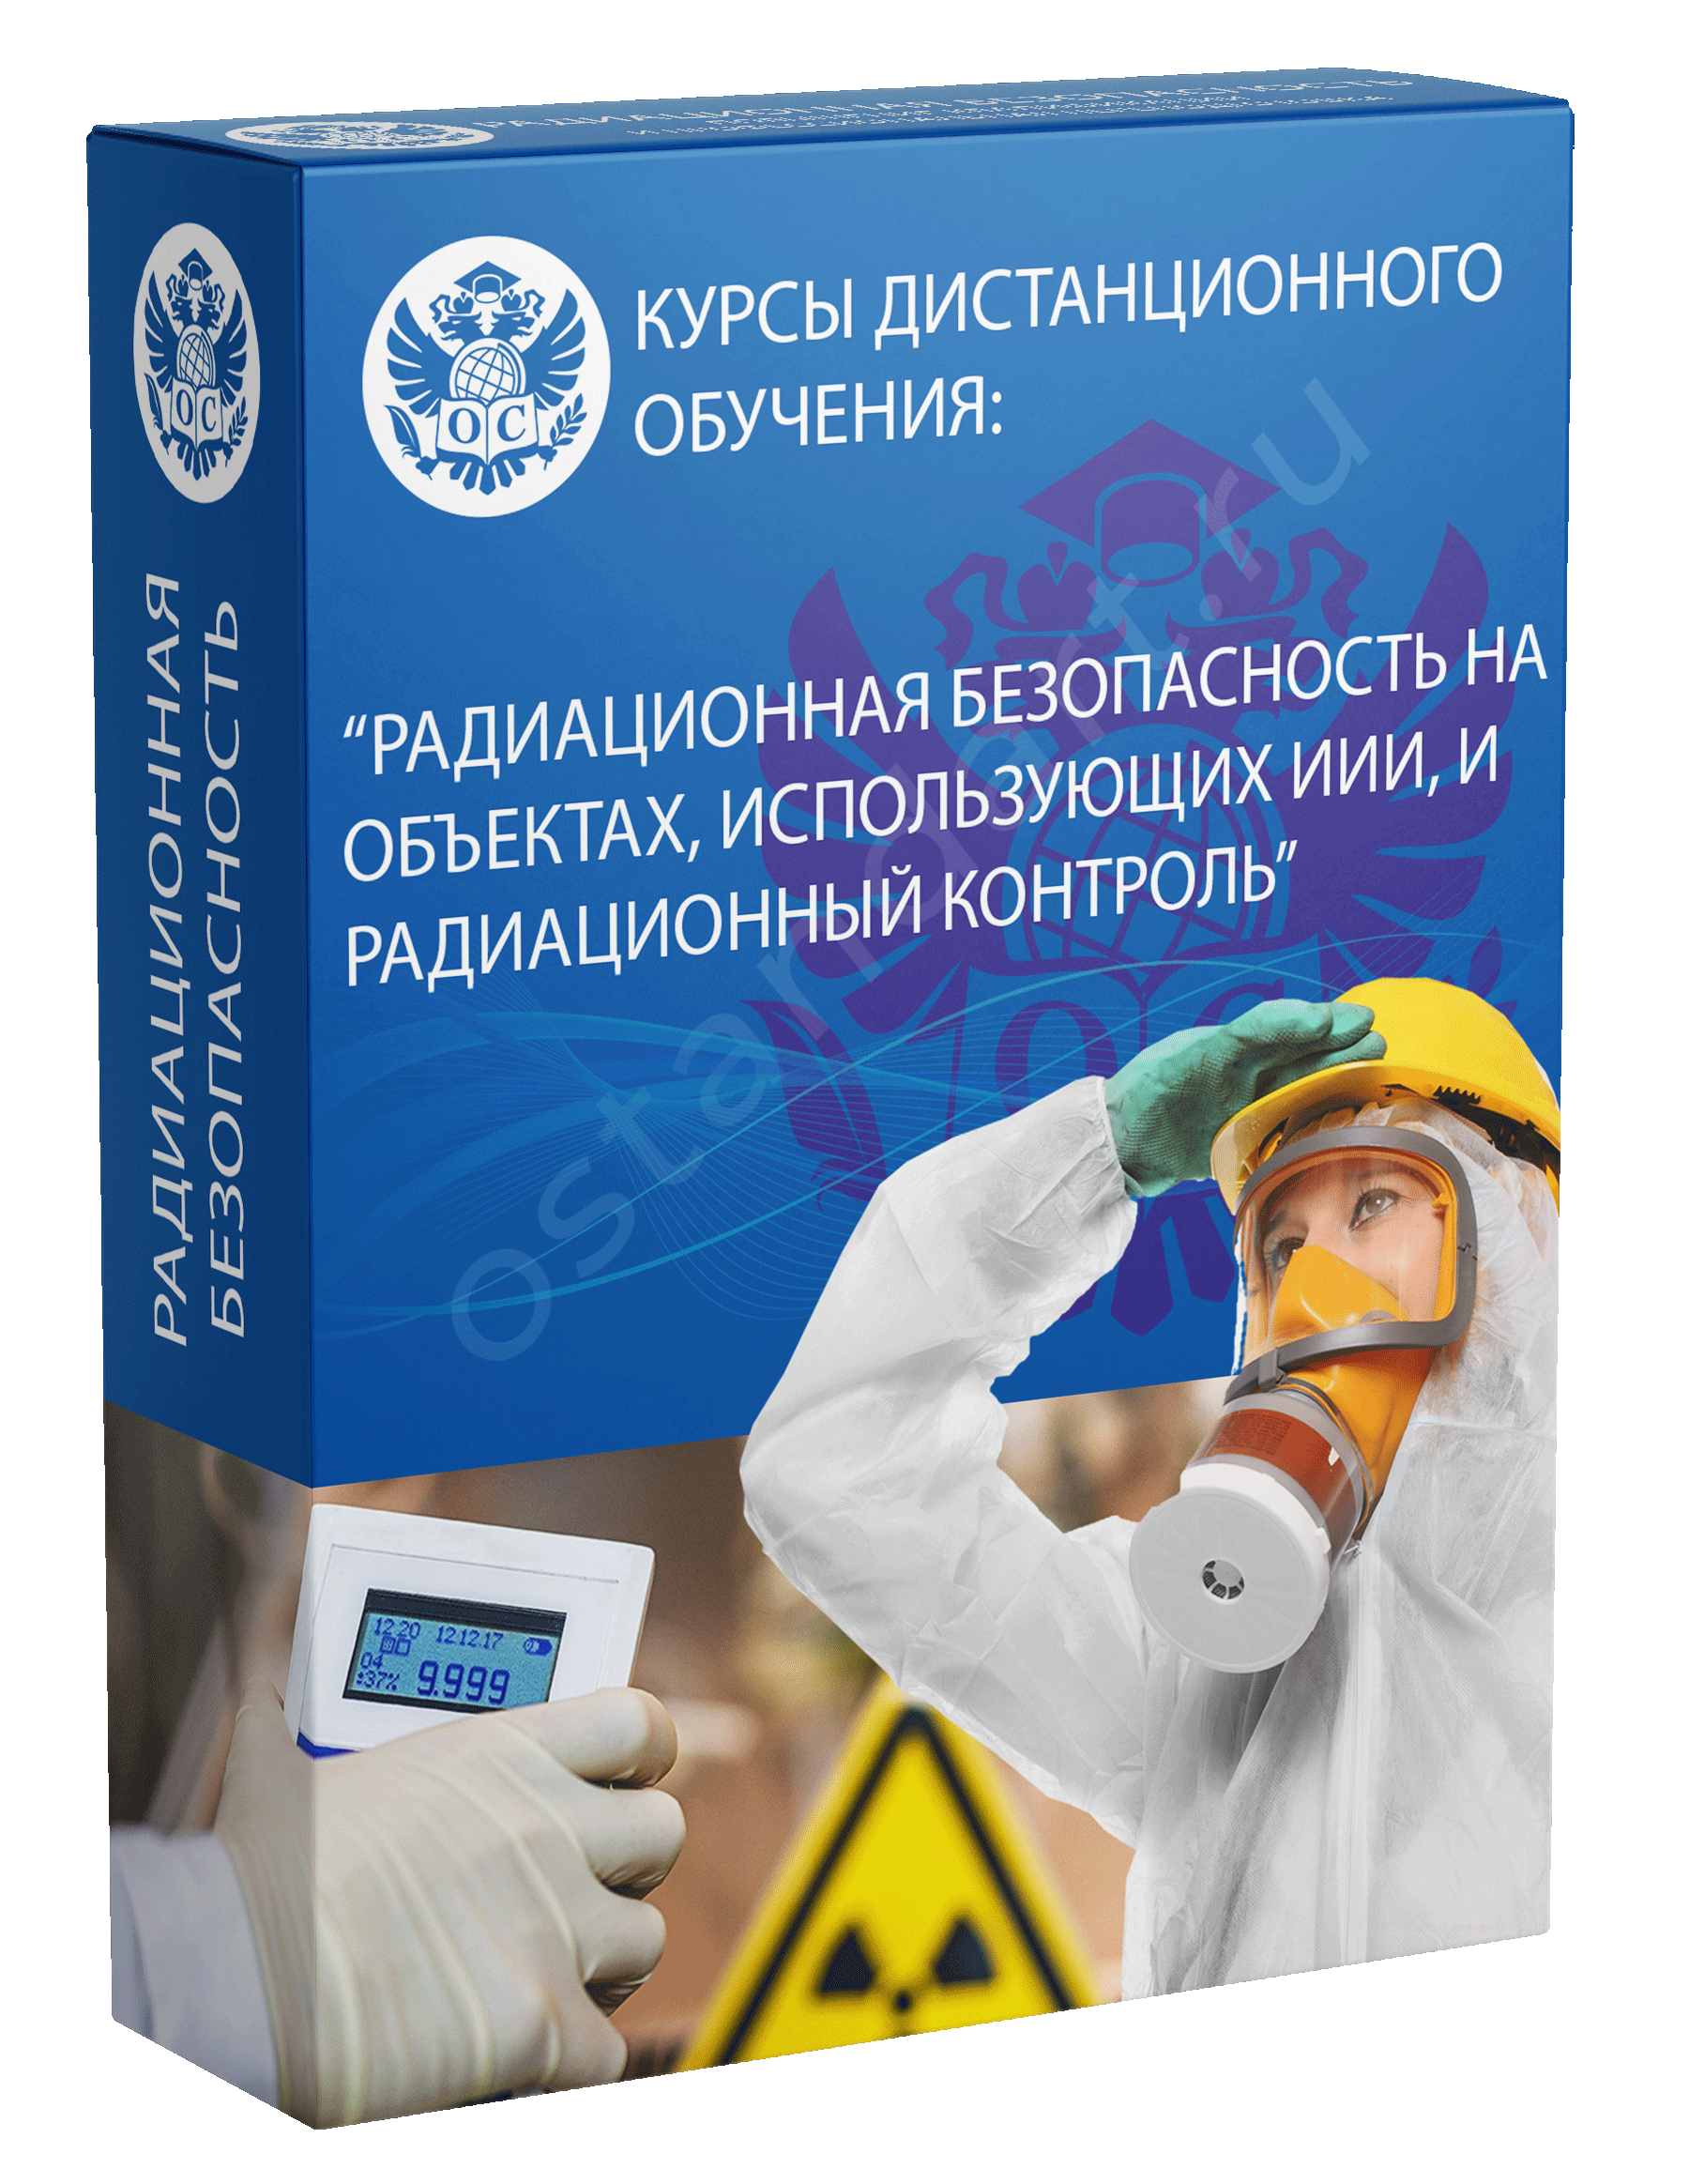 Радиационная безопасность на объектах, использующих ИИИ, и радиационный контроль курс обучения